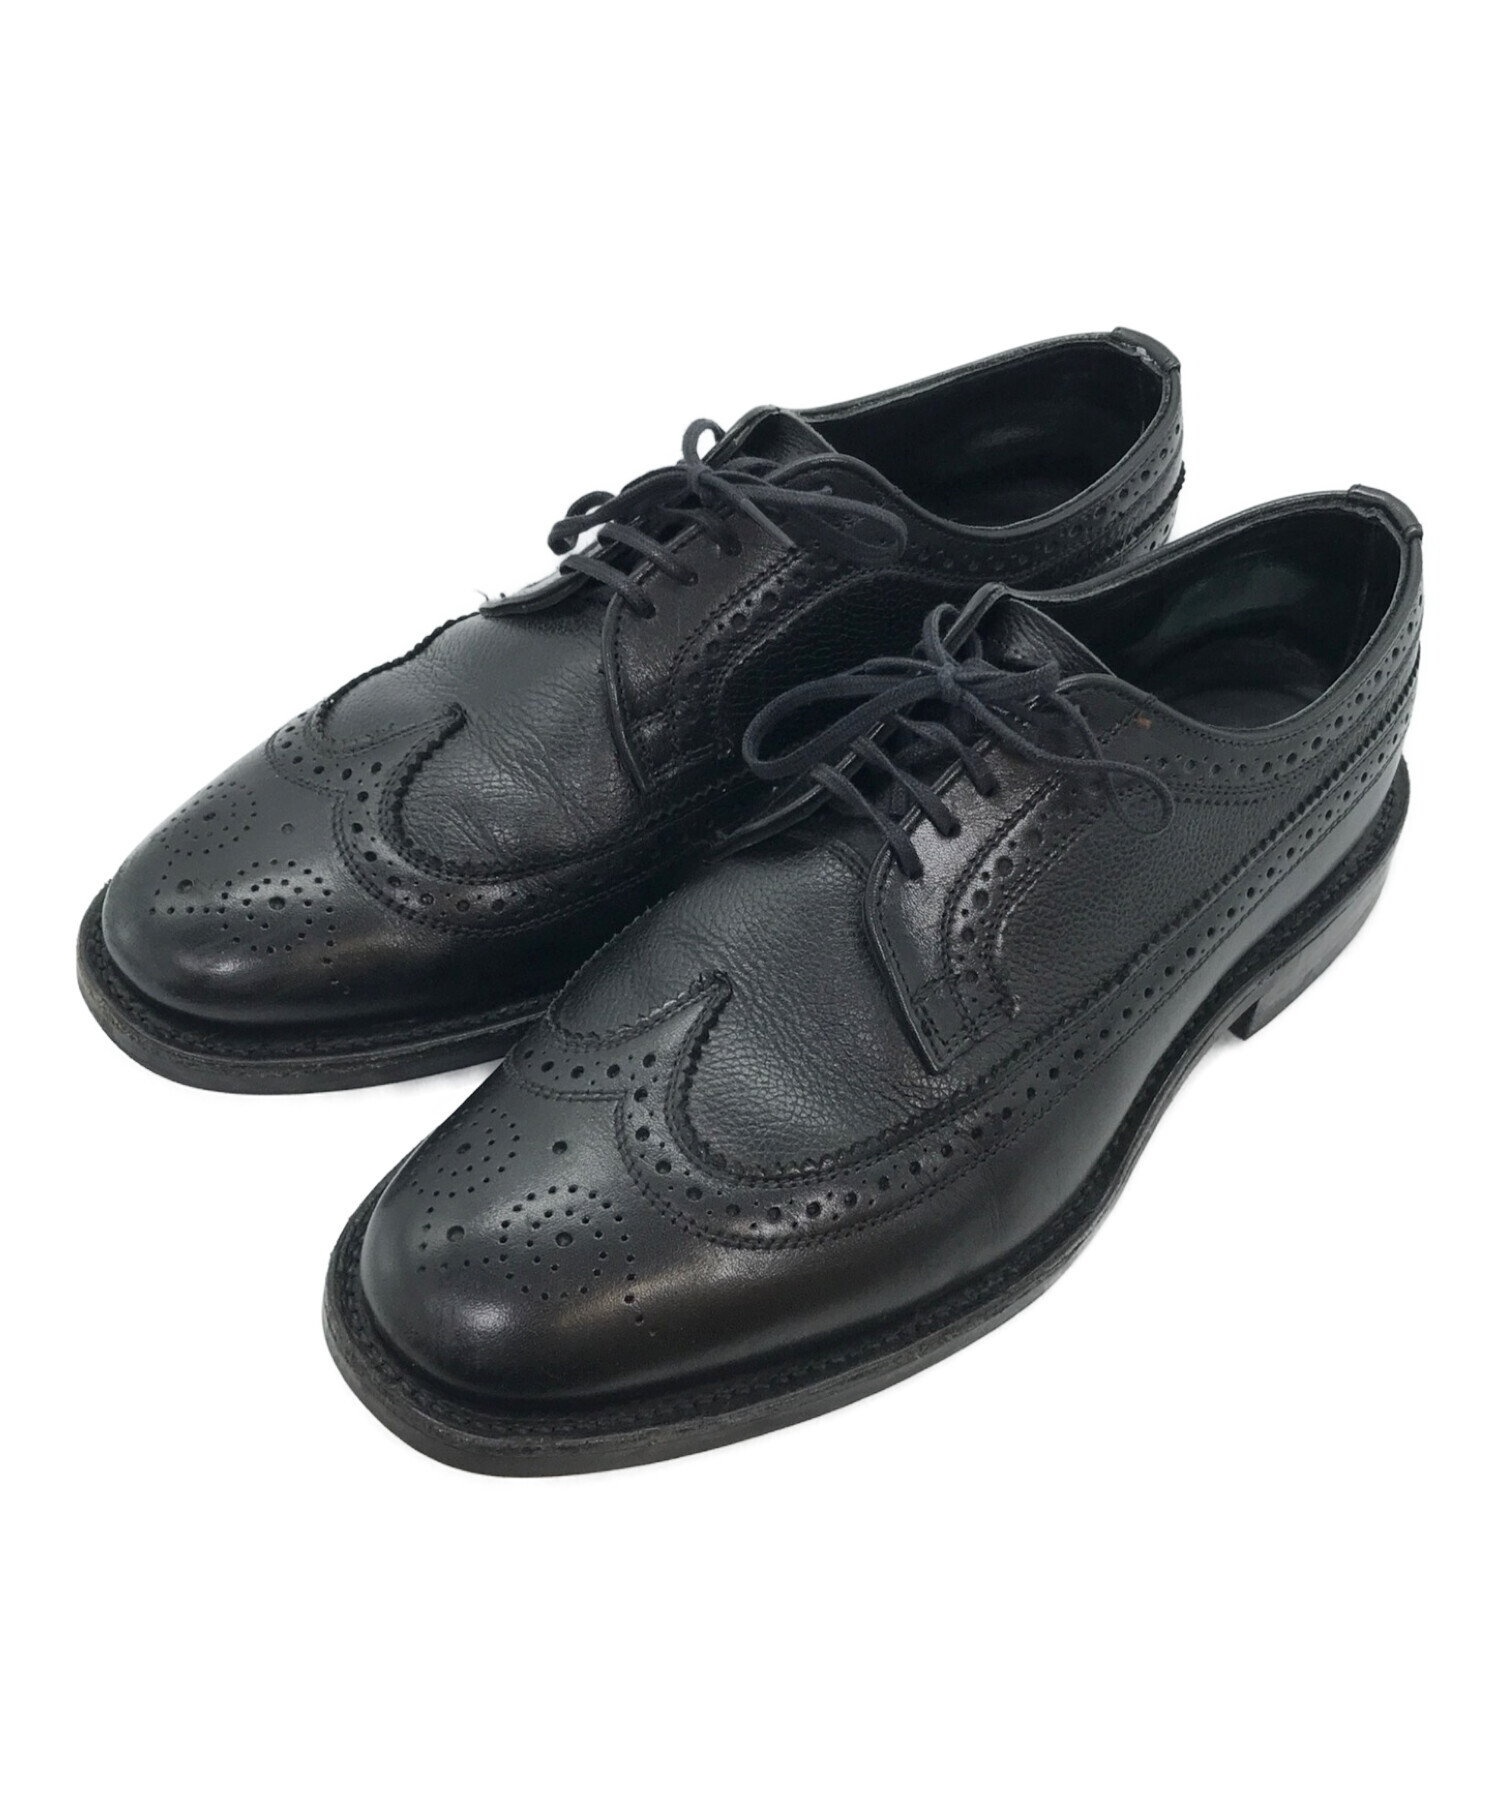 SANDERS 革靴 ブラック GB7 1/2  ビジネスシューズ